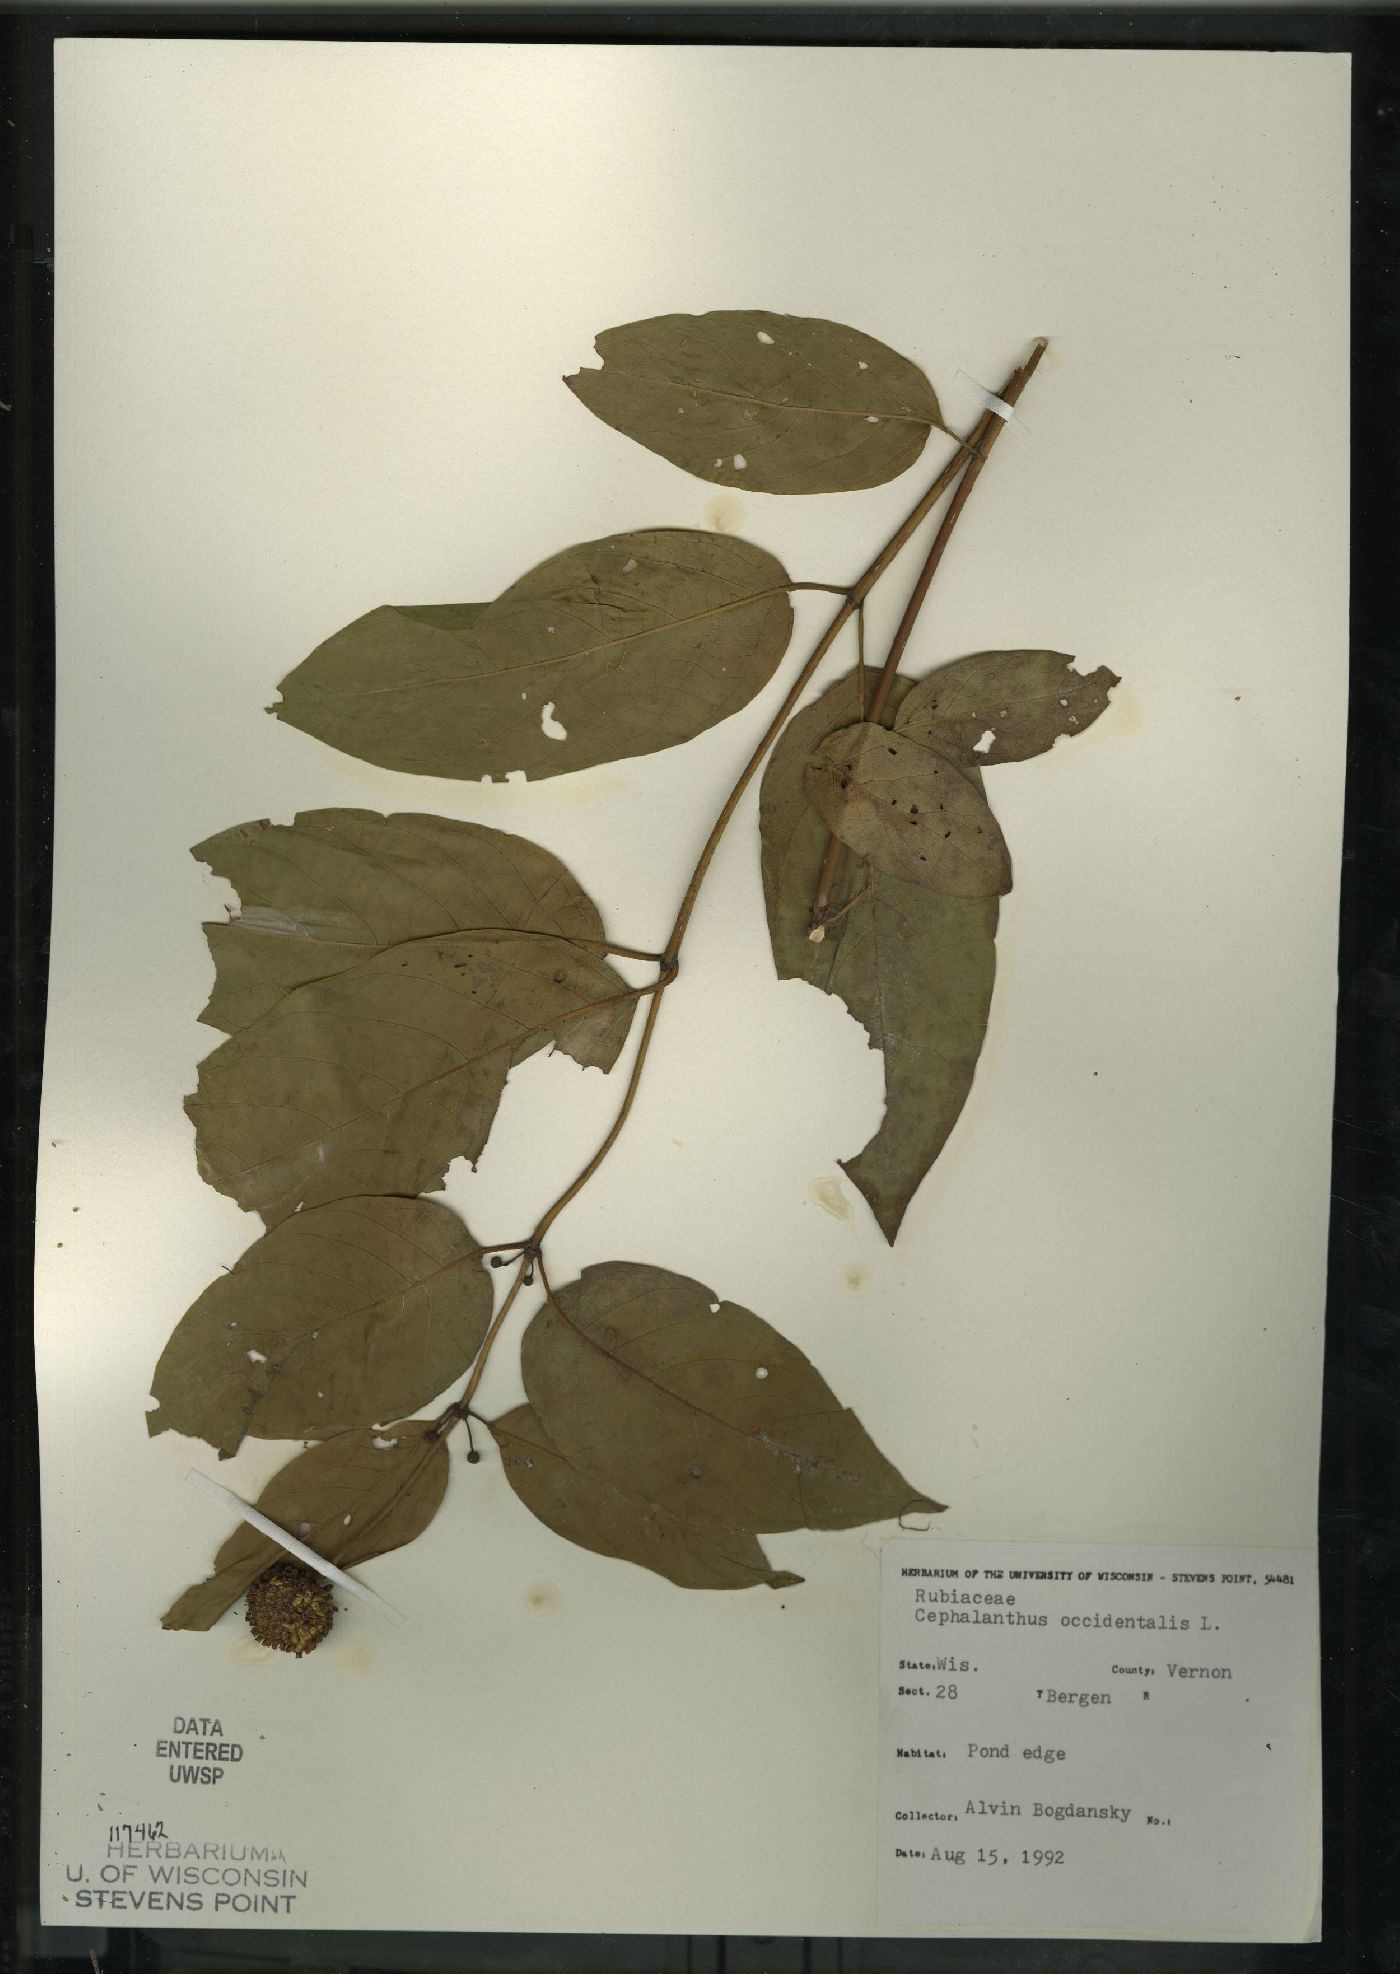 Cephalanthus image